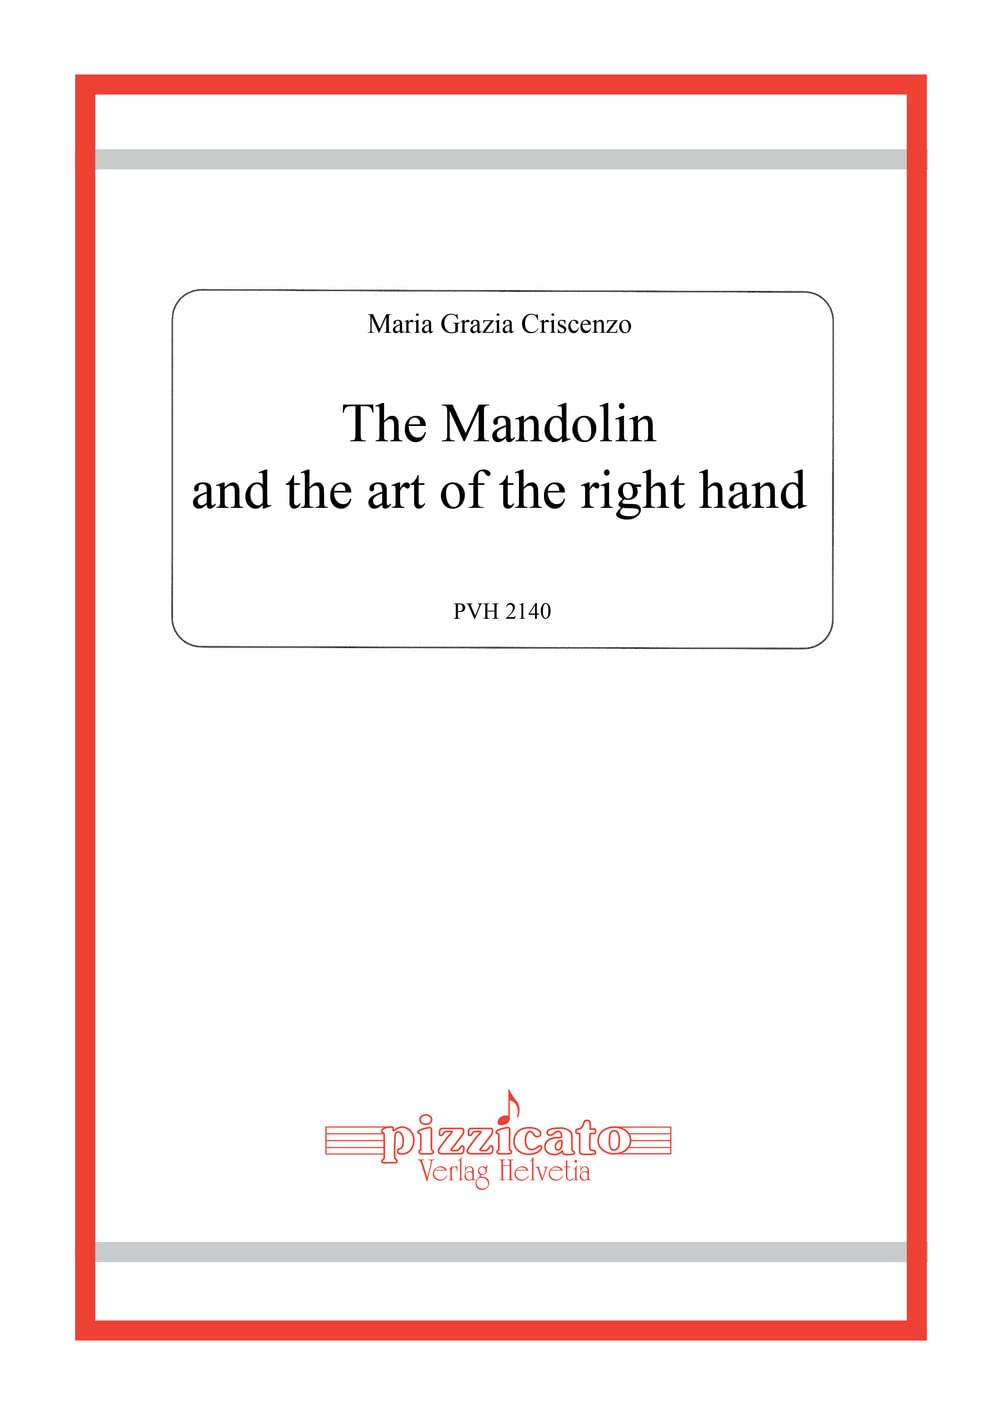 Libri Criscenzo Maria Grazia - The Mandolin And The Art Of The Right Hand NUOVO SIGILLATO, EDIZIONE DEL 28/11/2022 SUBITO DISPONIBILE